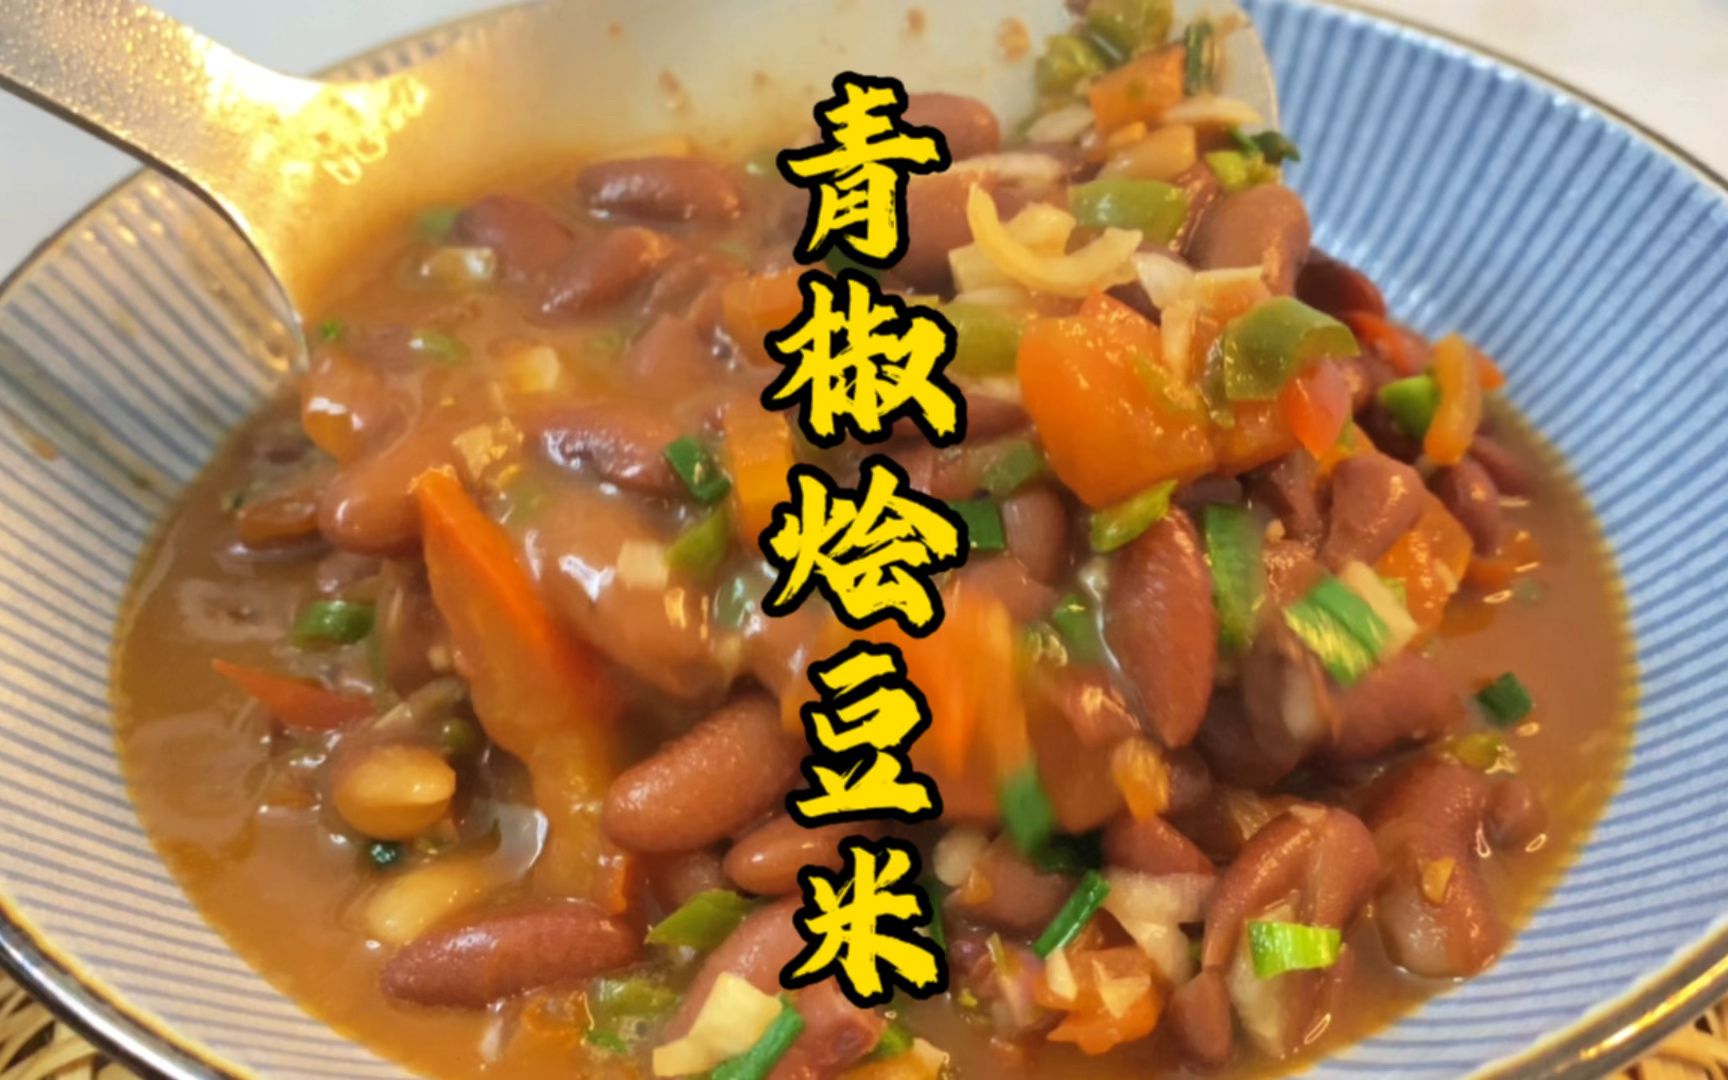 贵州家常菜之青椒烩豆米汤汁泡饭至少三碗打底